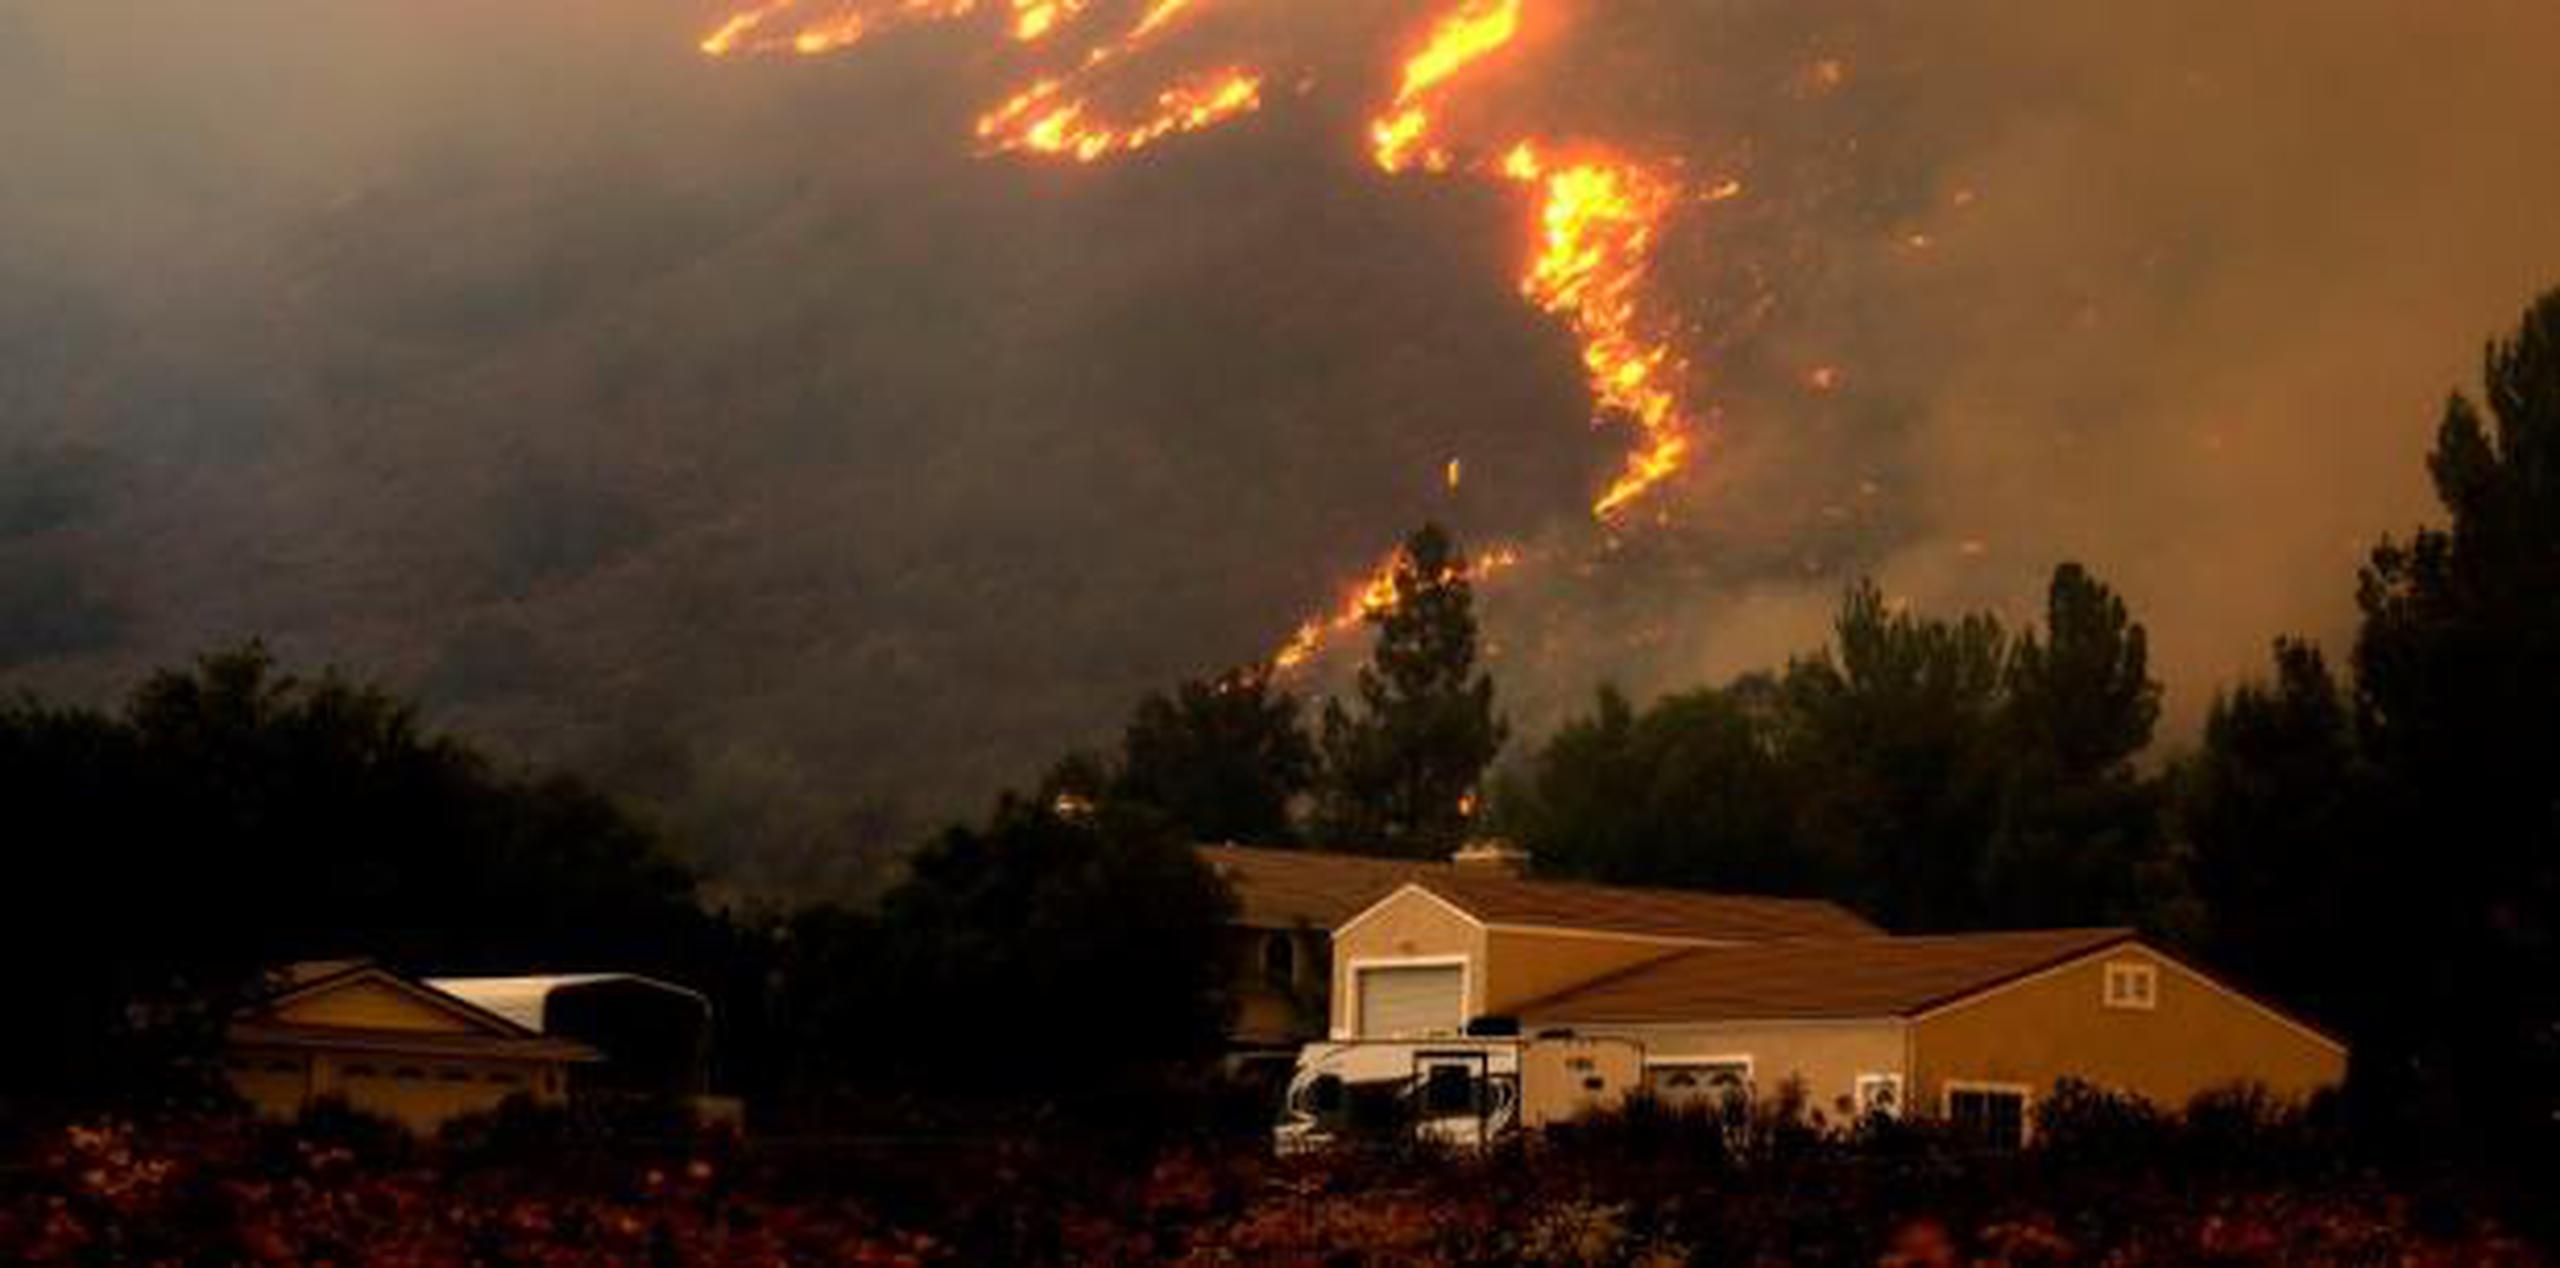 Los incendios han destruido miles de viviendas en California en los últimos dos años, incluyendo 1,200 este año. (AP)